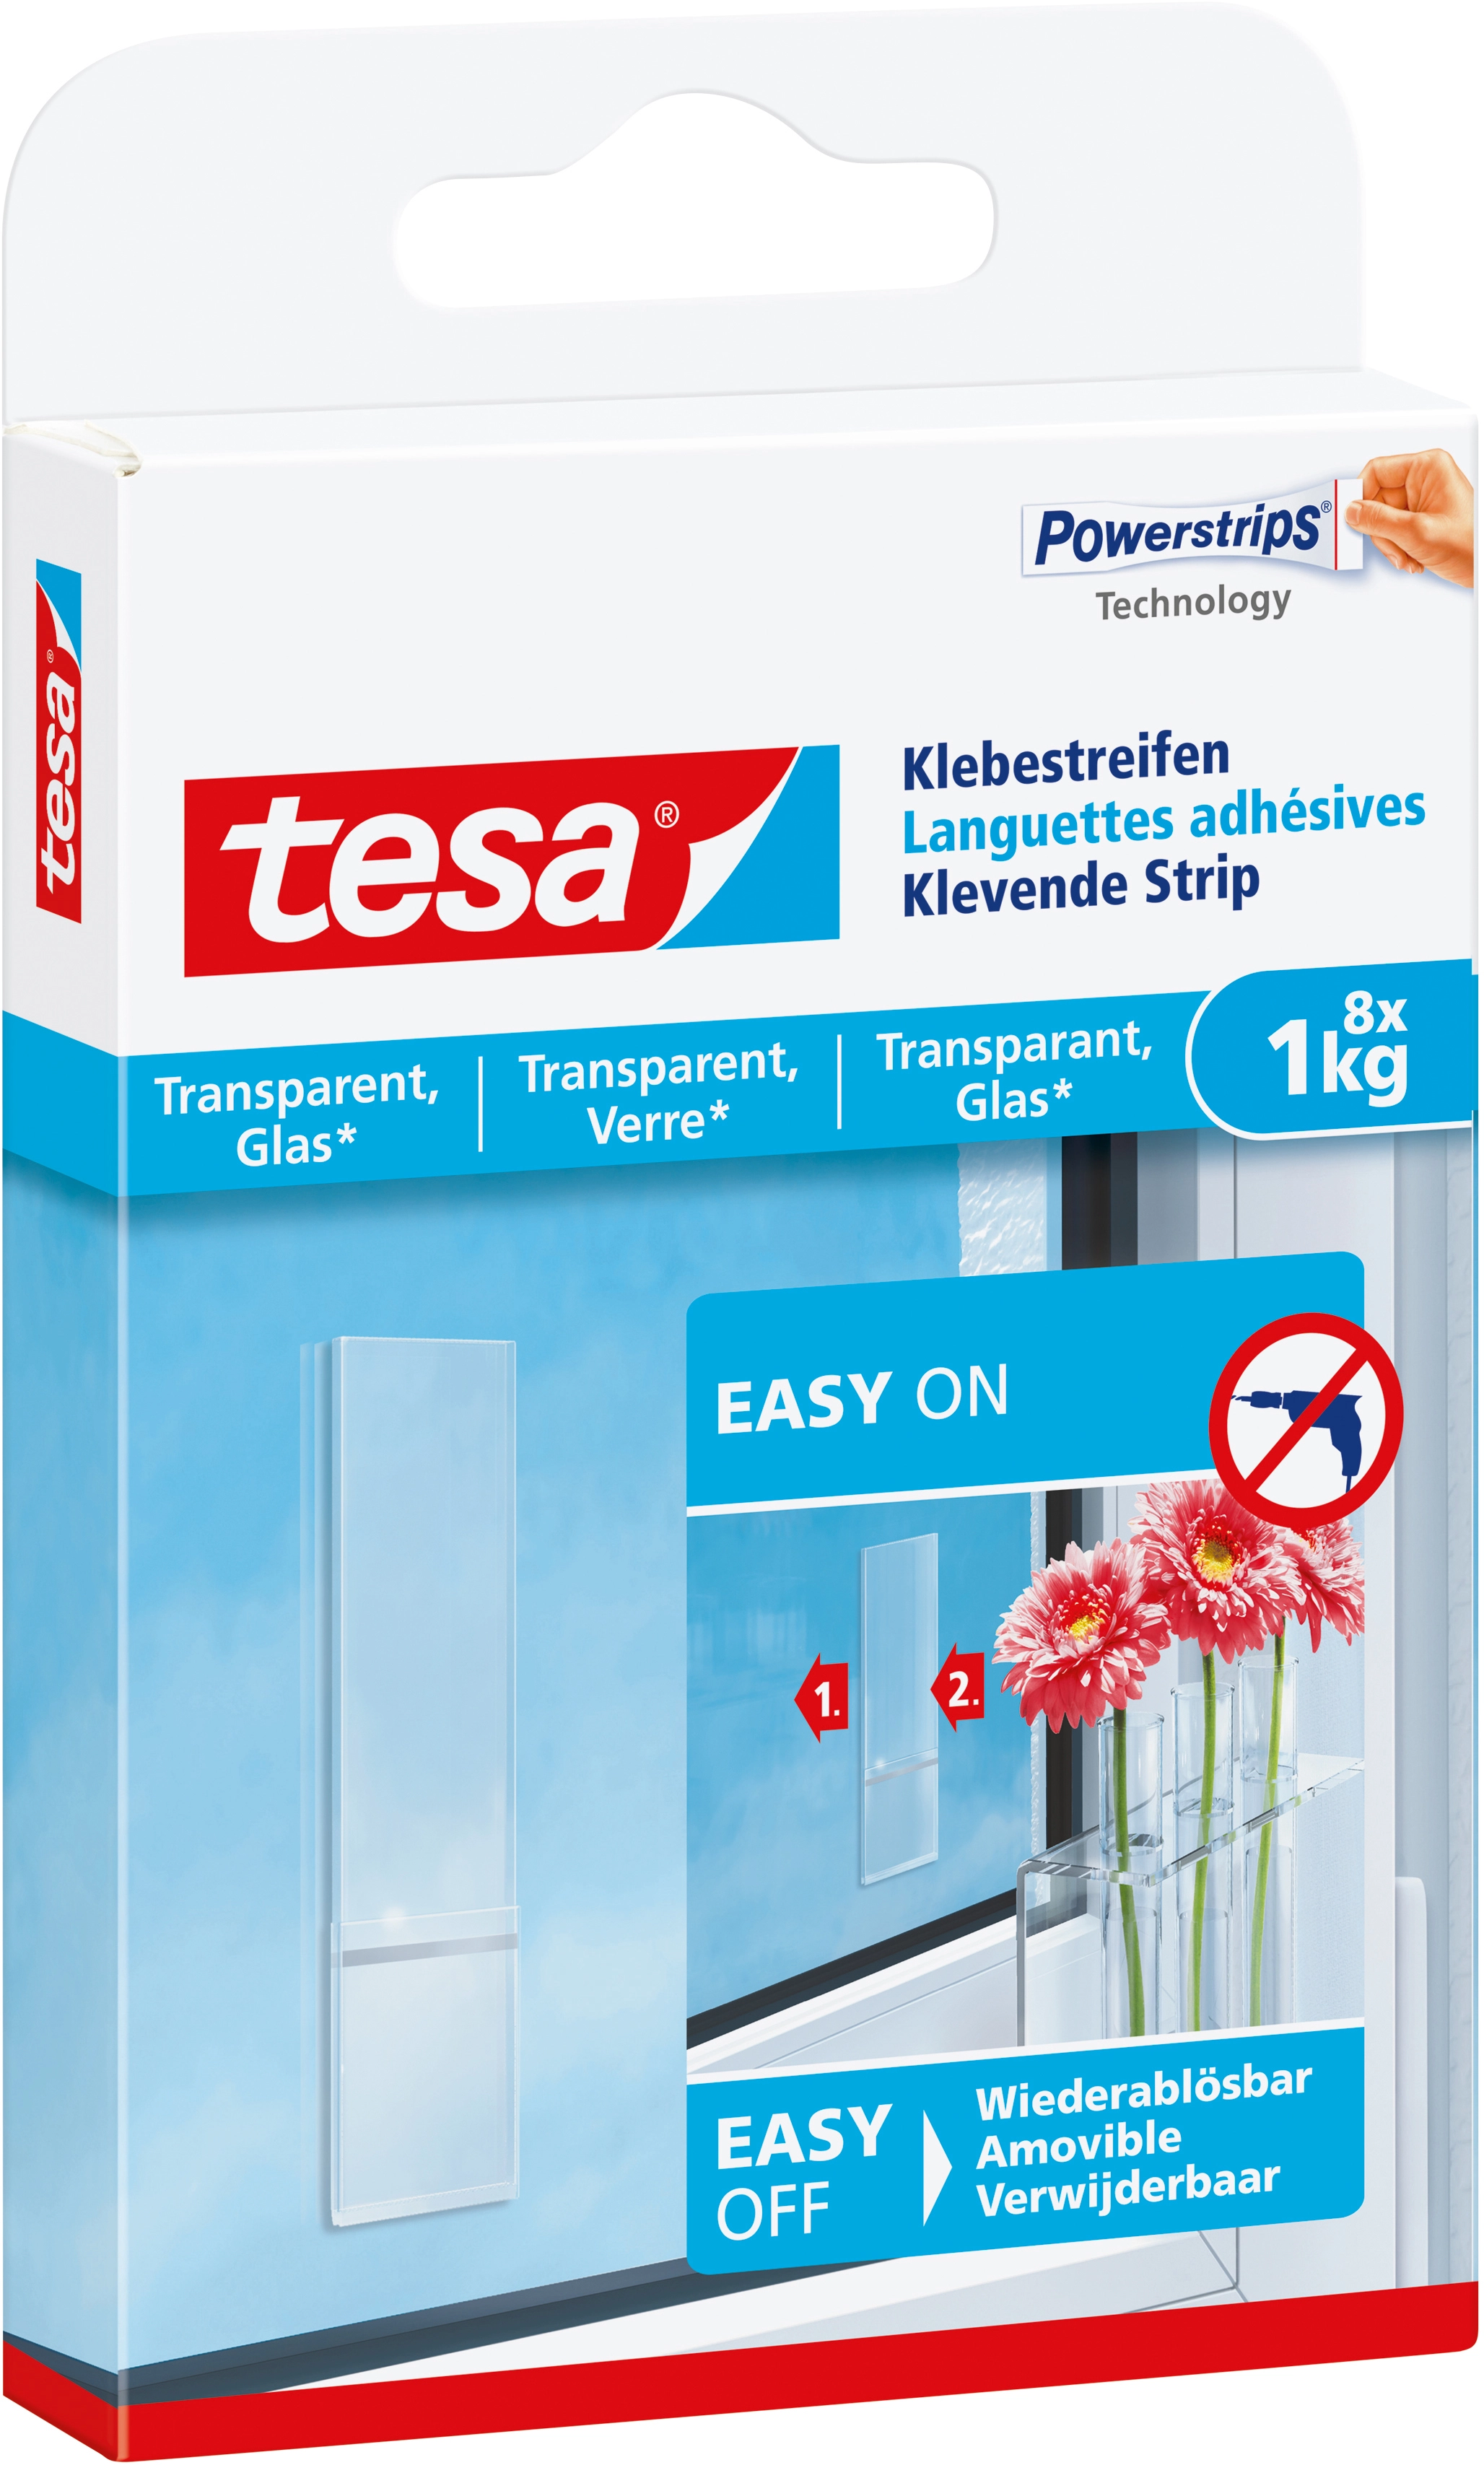 tesa® Klebehaken für transparente Oberflächen und Glas (1kg) - tesa